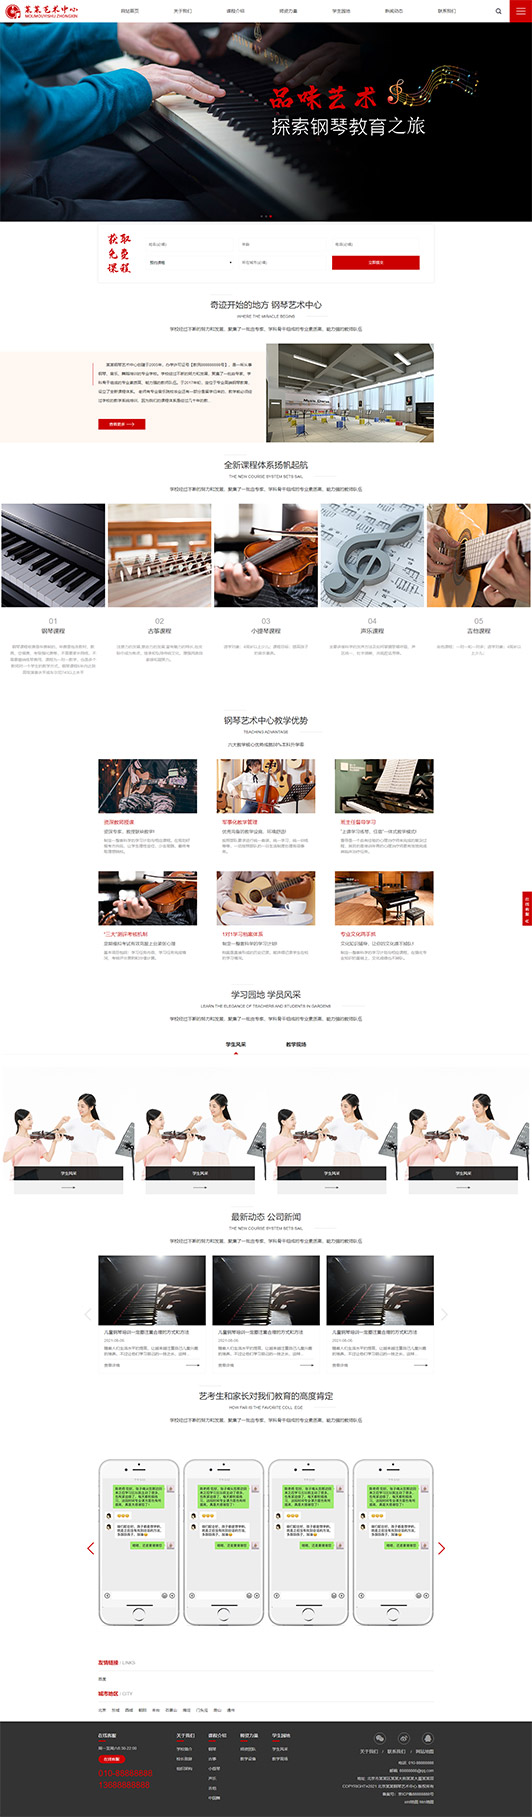 绵阳钢琴艺术培训公司响应式企业网站